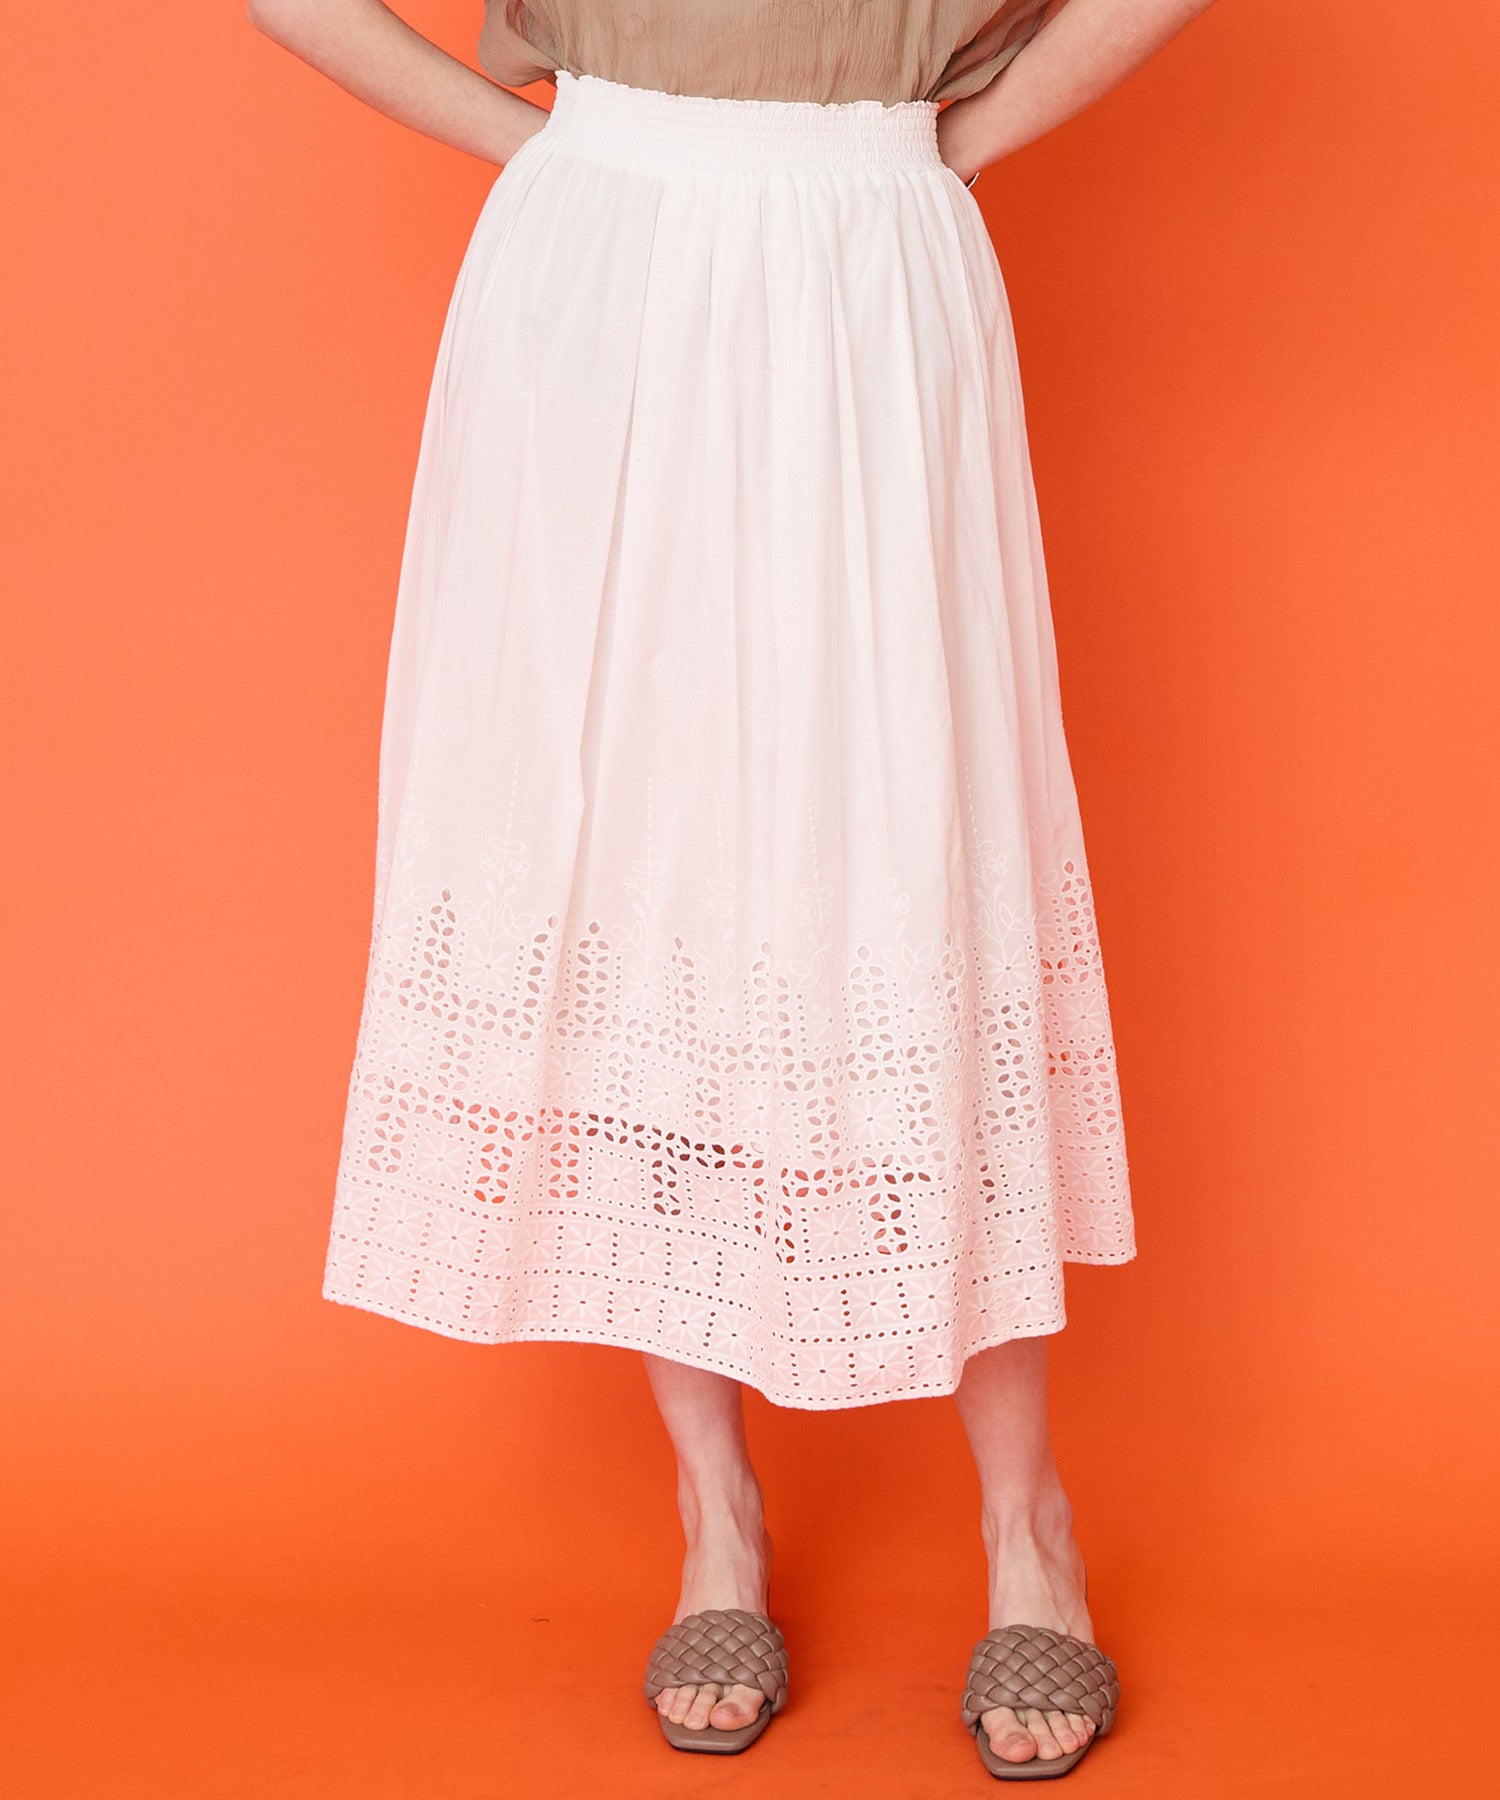 【FONT LAB】シフリー刺繍 パネルレーススカート | JETSET SOLO PLUS(ジェットセットソロプラス) 公式通販 | インポート レディース ファッション きれいめカジュアル